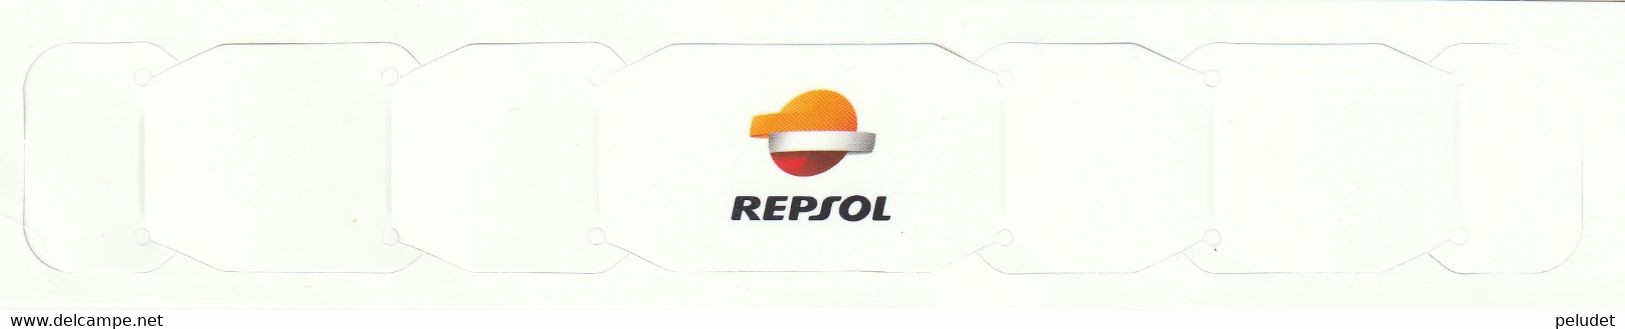 REPSOL - Sujeta Mascarilla De Cartón, Porte-masque En Carton, Cardboard Mask Holder - Matériel Et Accessoires